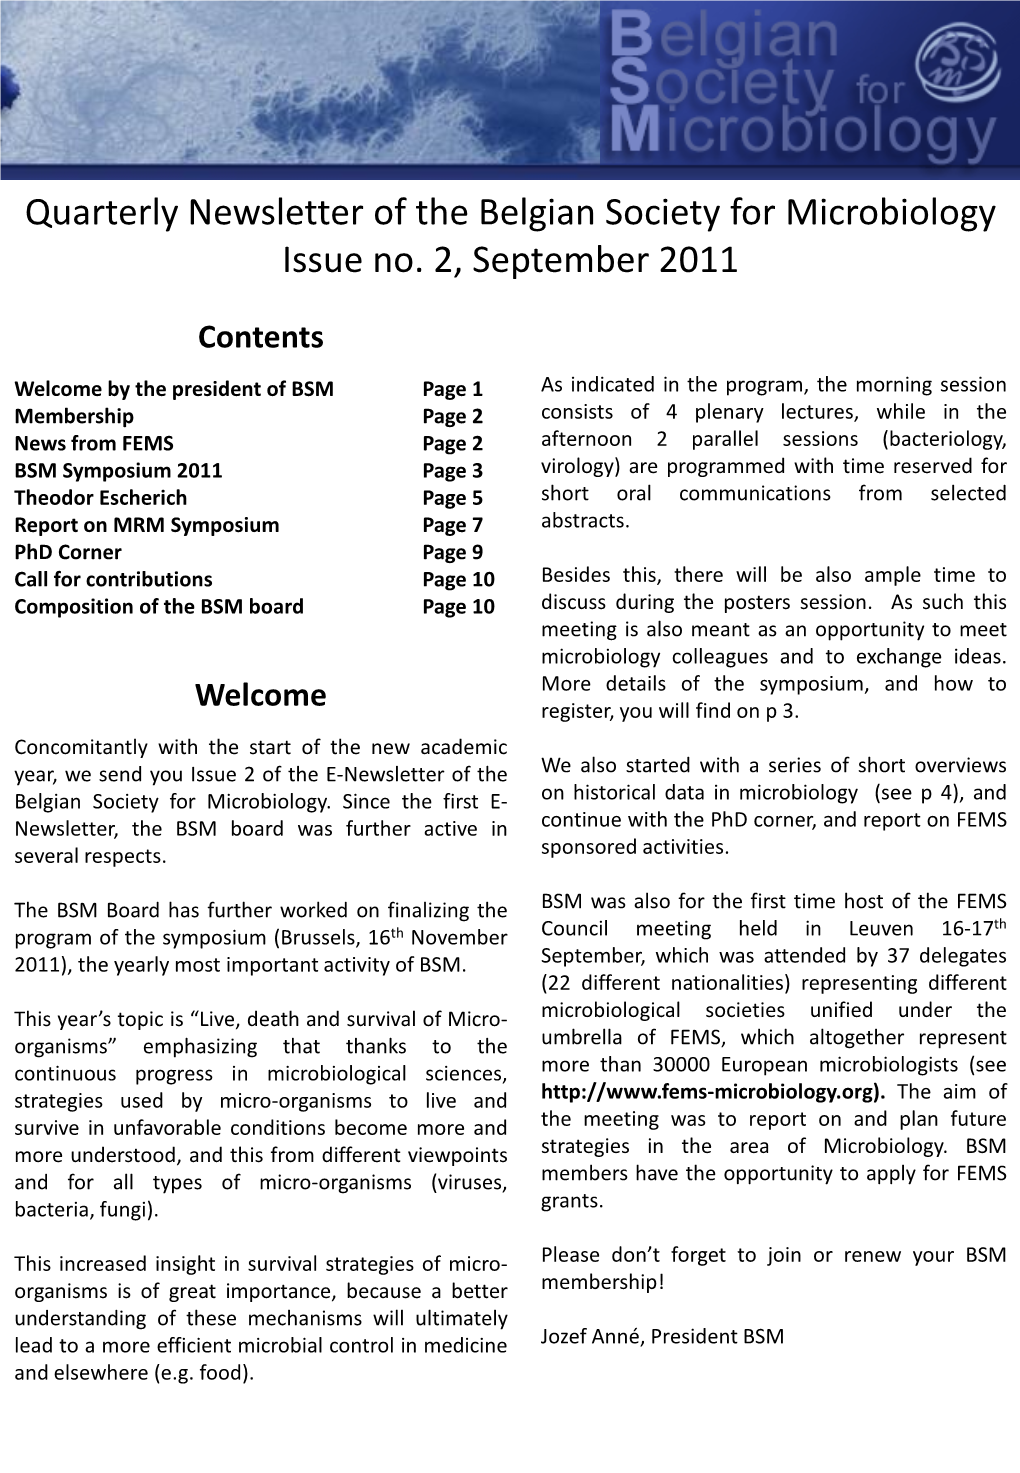 Issue 2, September 2011